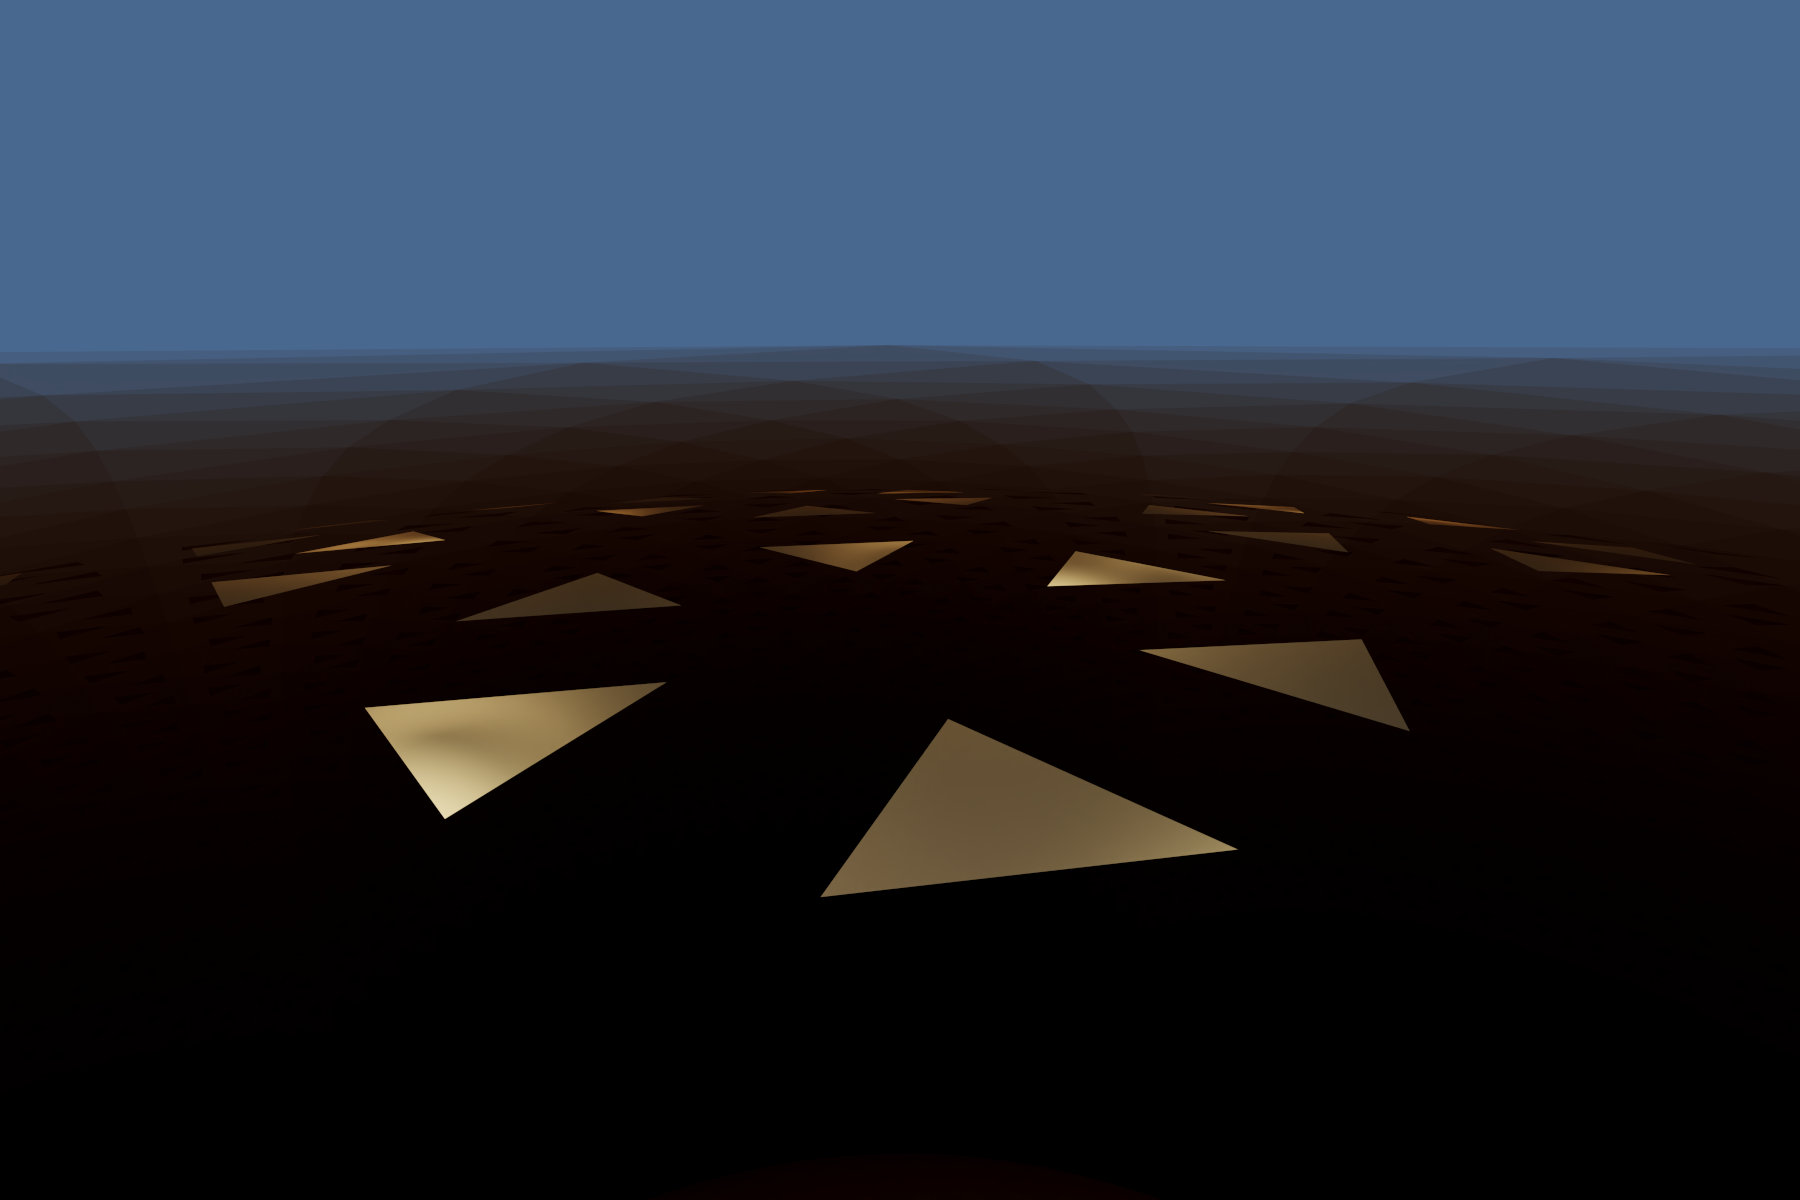 Virtuelle abstrakte Szenerie, Abstrakte digitale Kunst, Raytracing, Computer-gerendertes Bild, 2022. Ein goldenes Dreieck erscheint in vielen Spiegelbildern auf einer gebogenen Fläche. Der blaue Hintergrund suggeriert den Eindruck einer Wasserfläche.